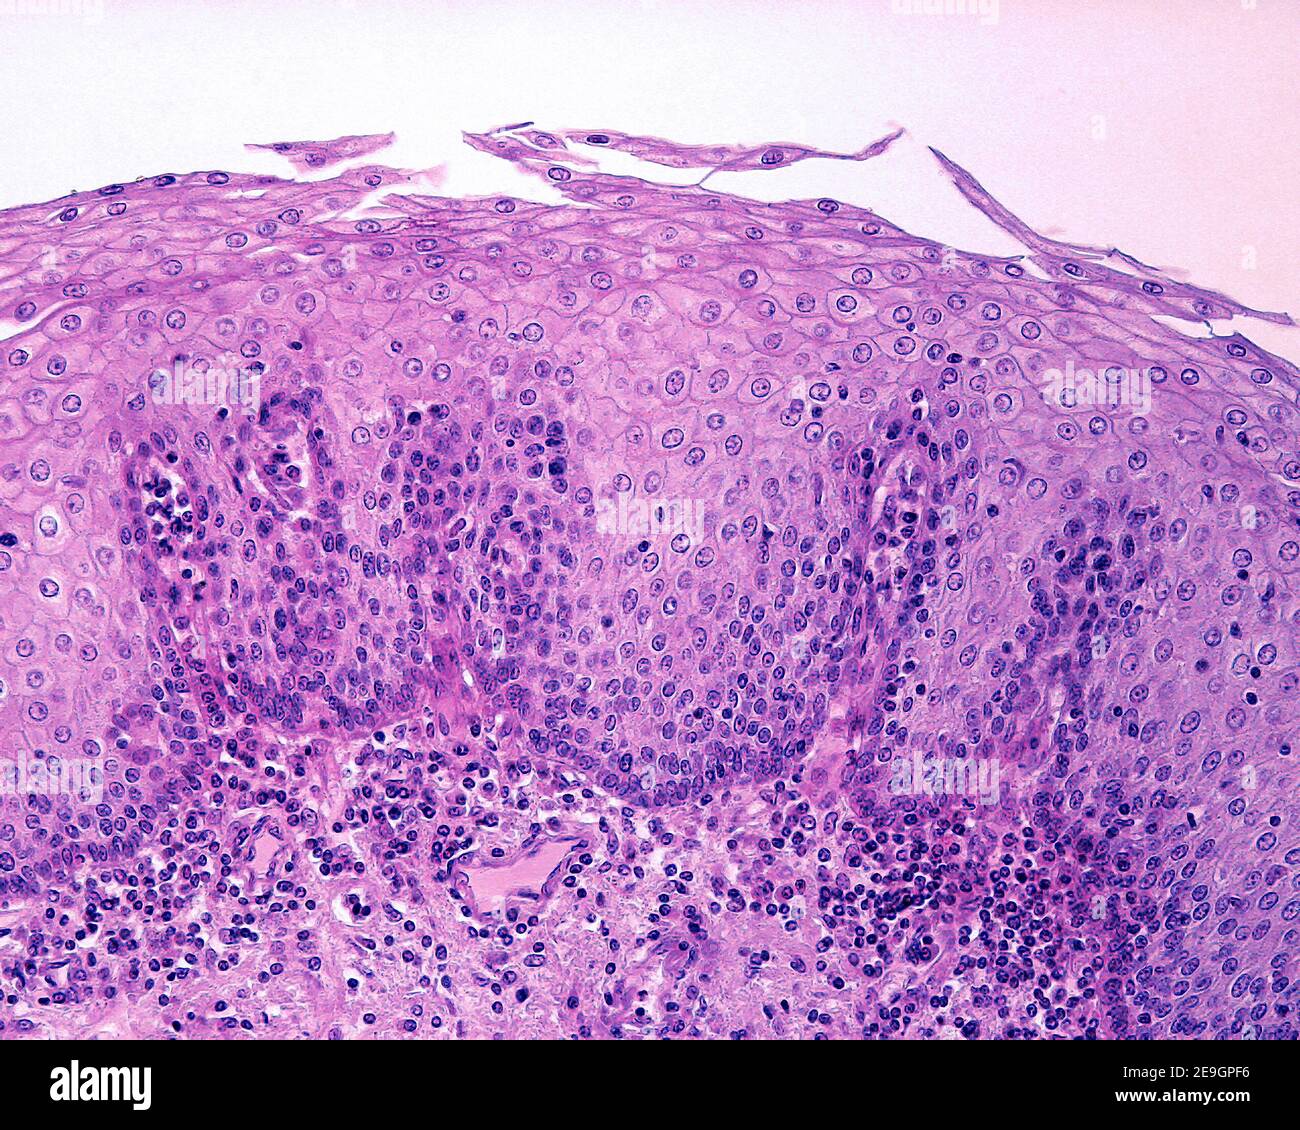 Revestimiento epitelial del esófago. Es un epitelio escamoso estratificado no queratinizado, cuyas células más superficiales retienen sus núcleos Foto de stock